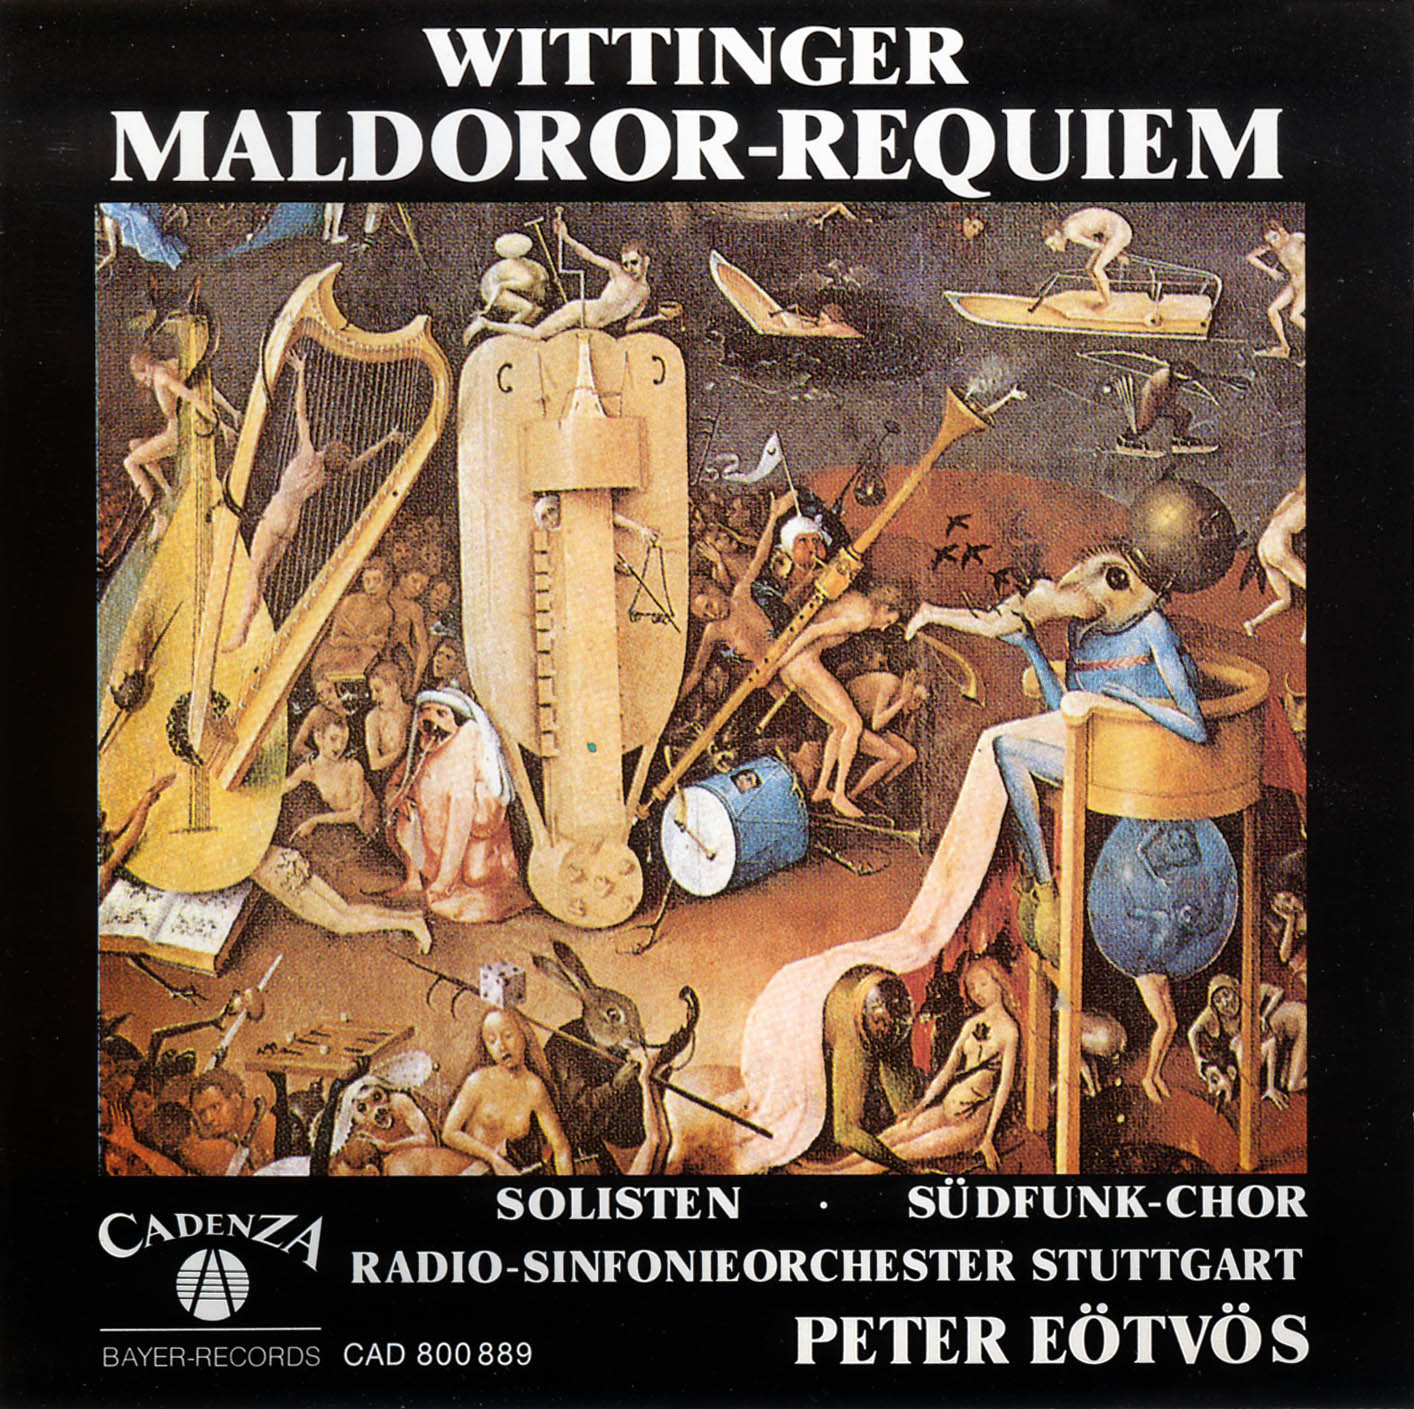 Robert Wittinger - Maldoror-Requiem